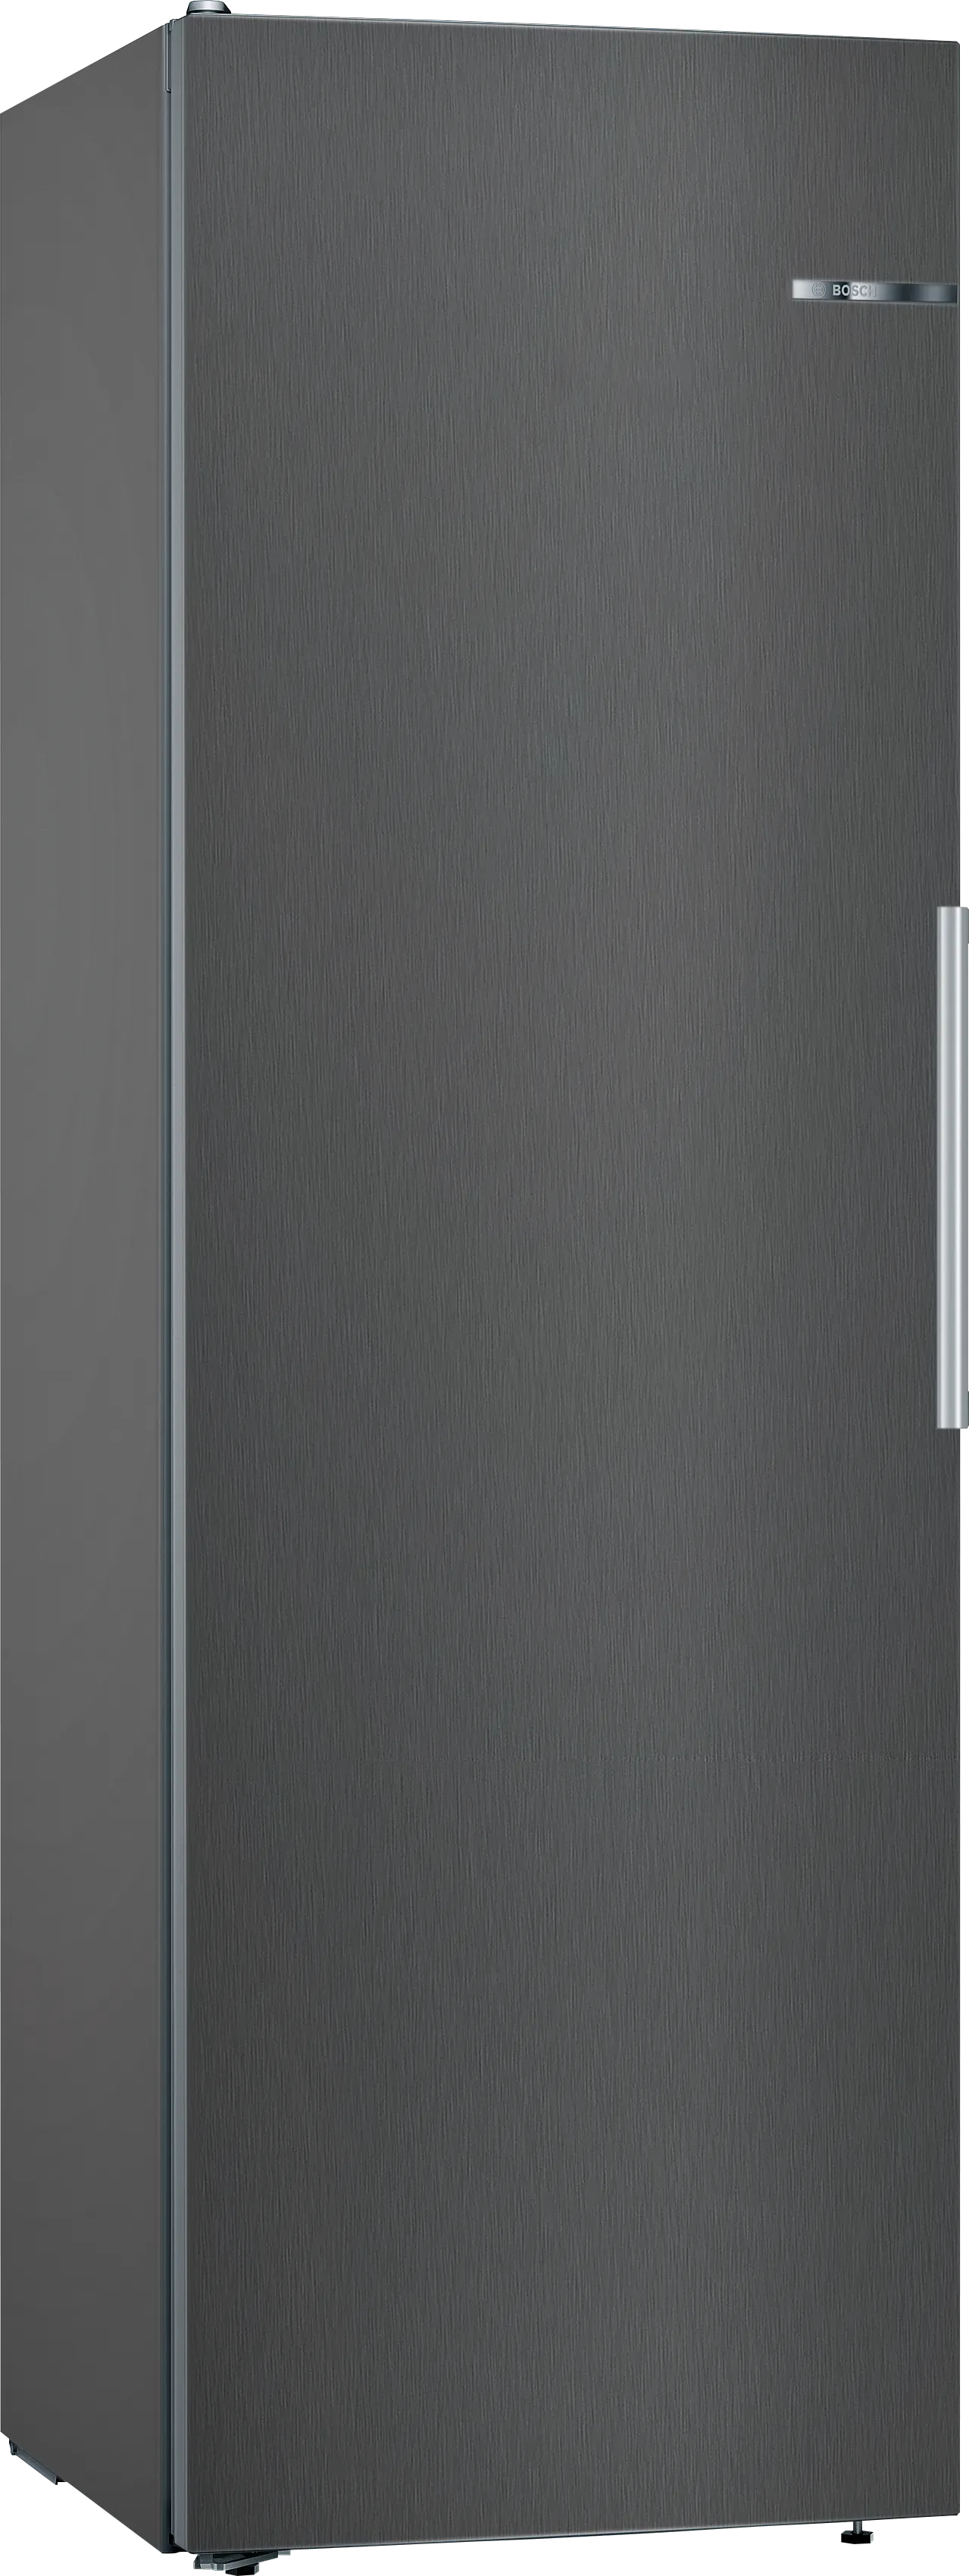 Serie 4 Freistehender Kühlschrank 186 x 60 cm Edelstahl schwarz 